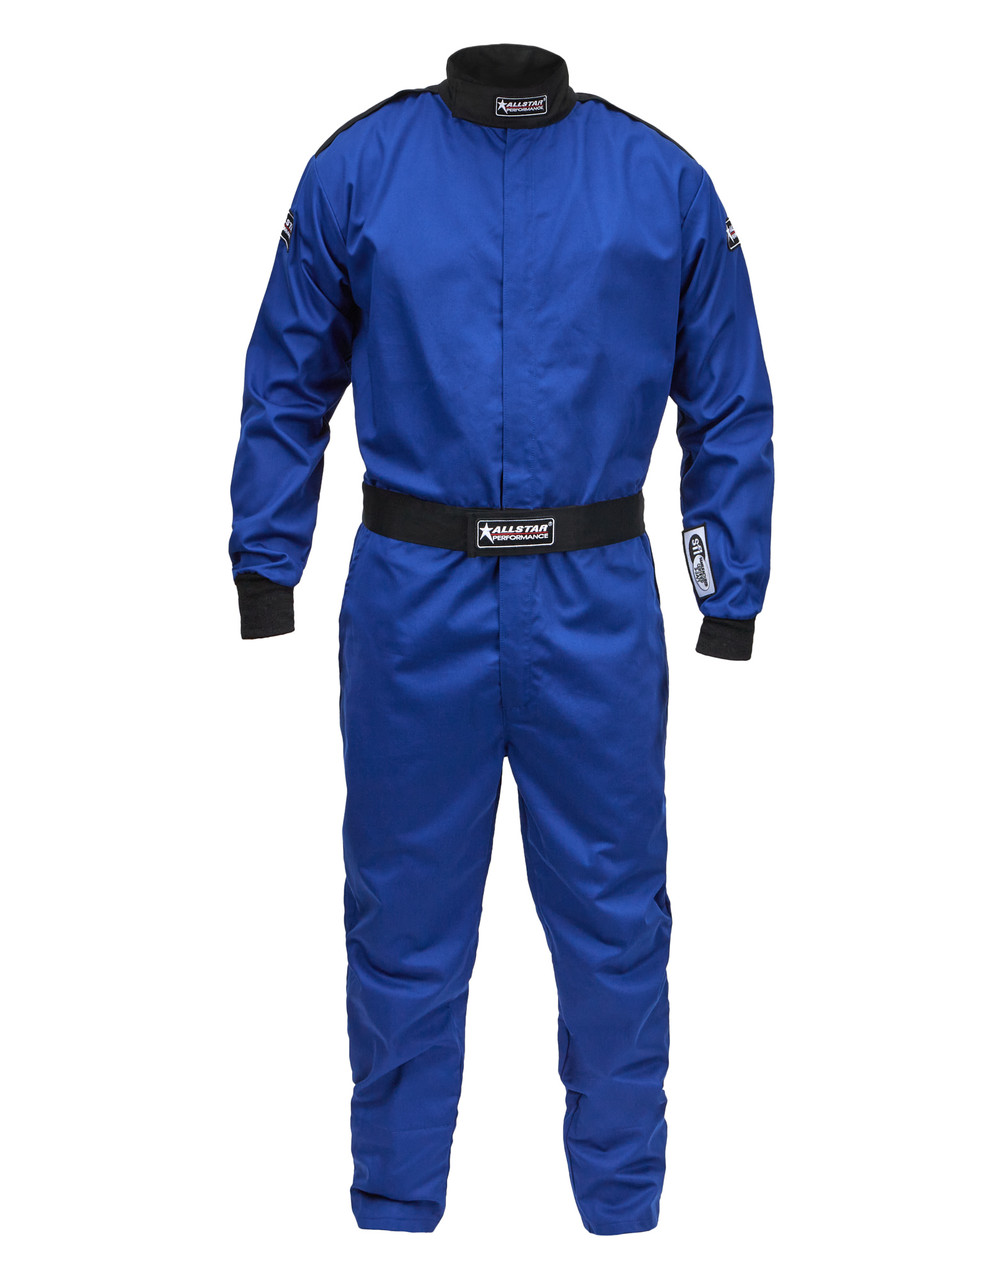 Racing Suit SFI 3.2A/1 S/L Blue Medium